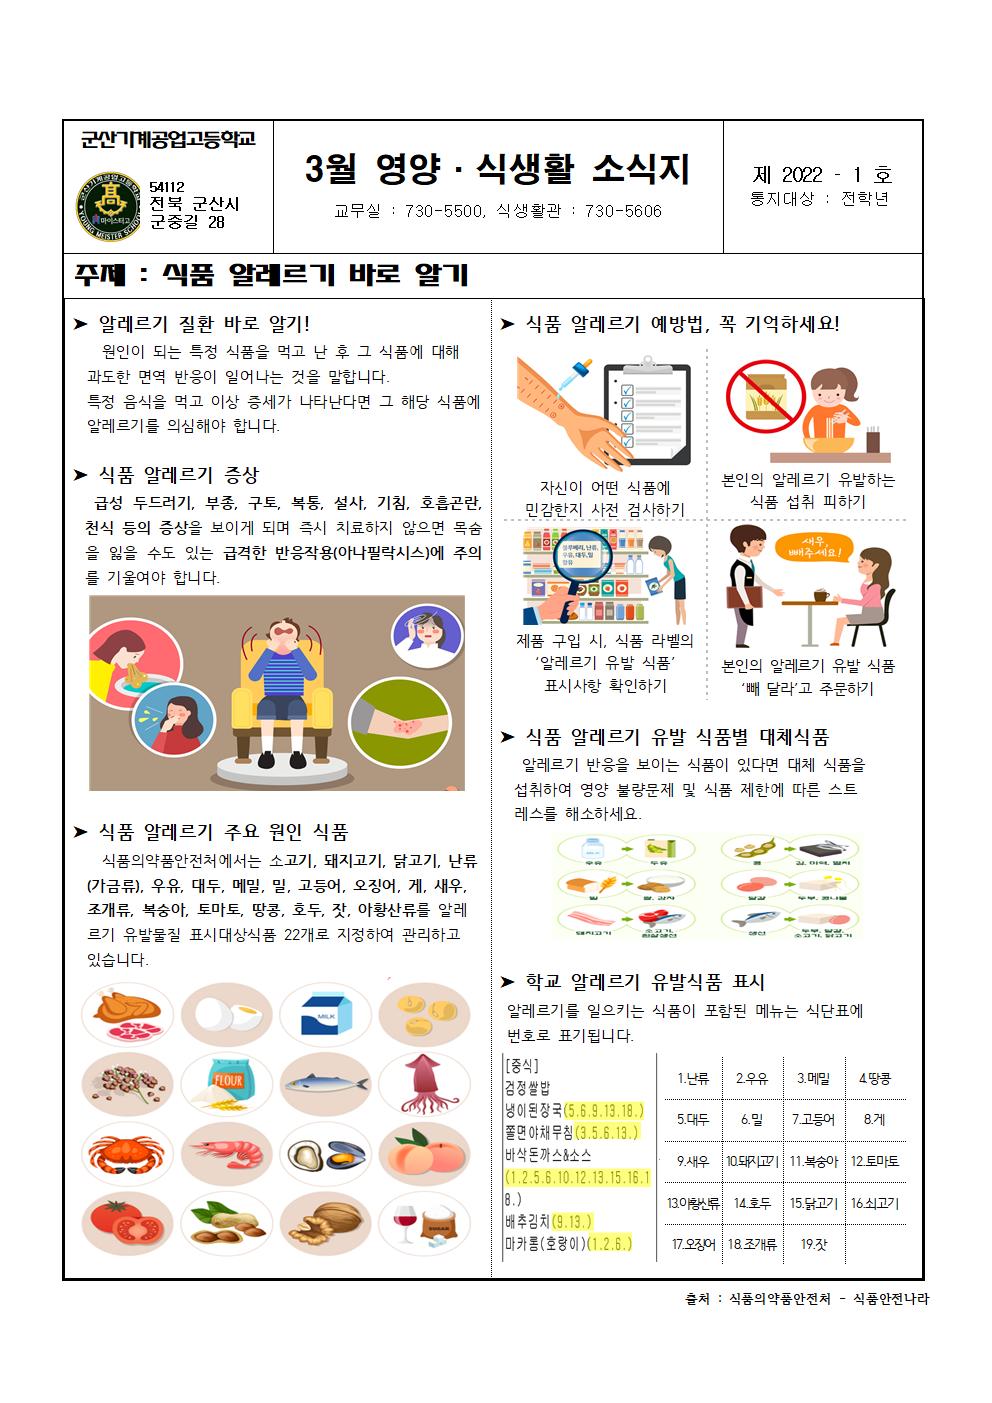 영양·식생활소식지(3월호_식품 알레르기 바로 알기)